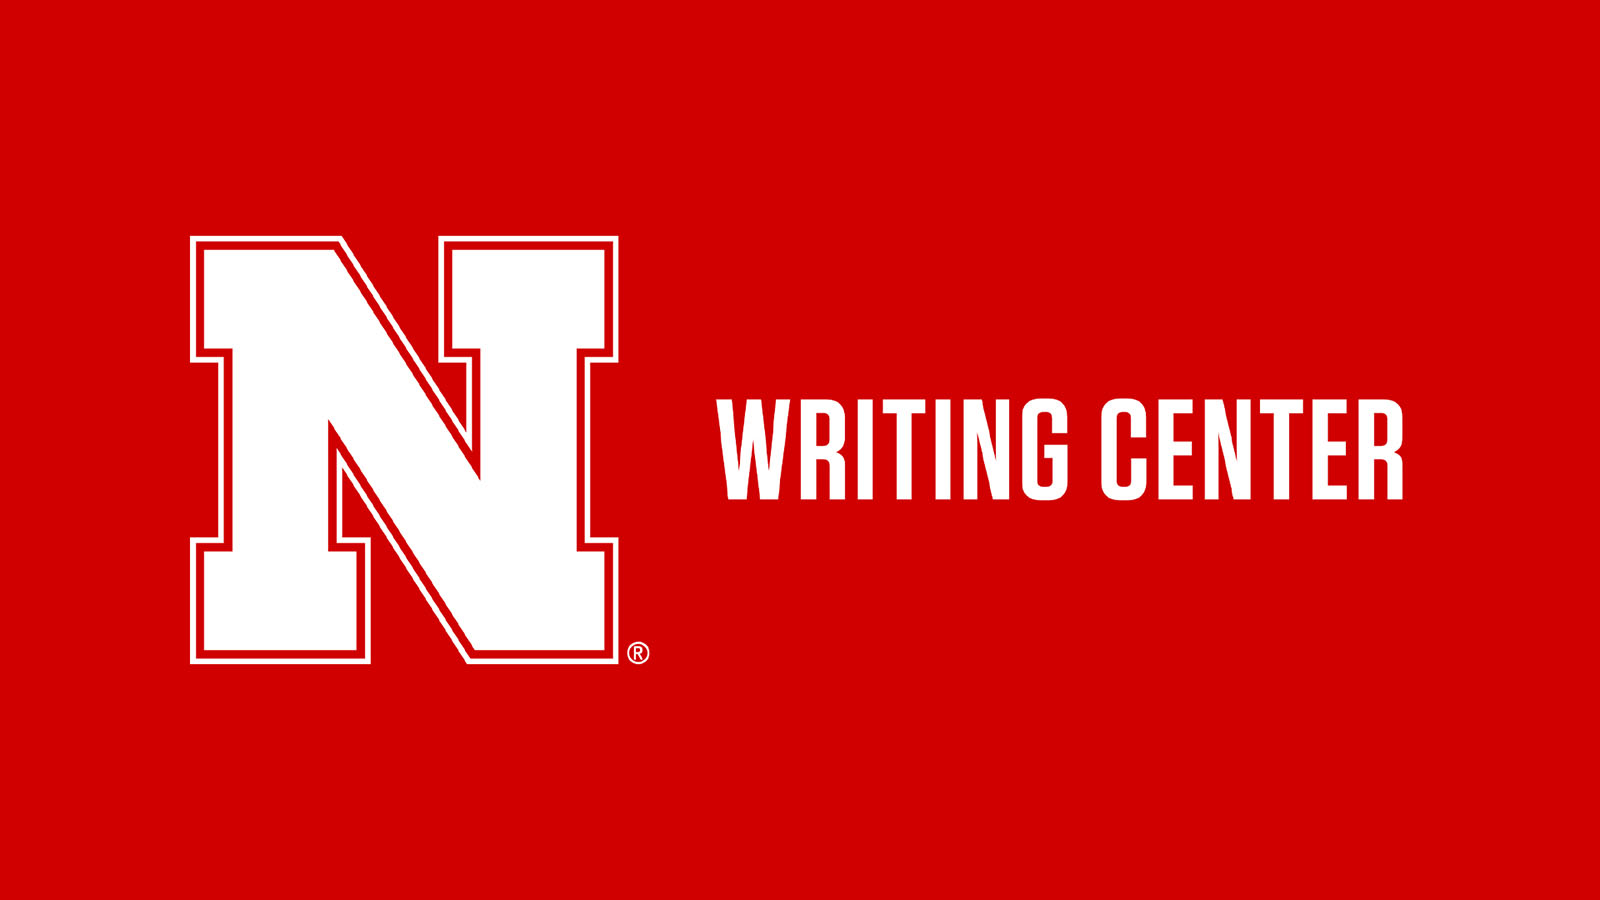 Writing Center logo